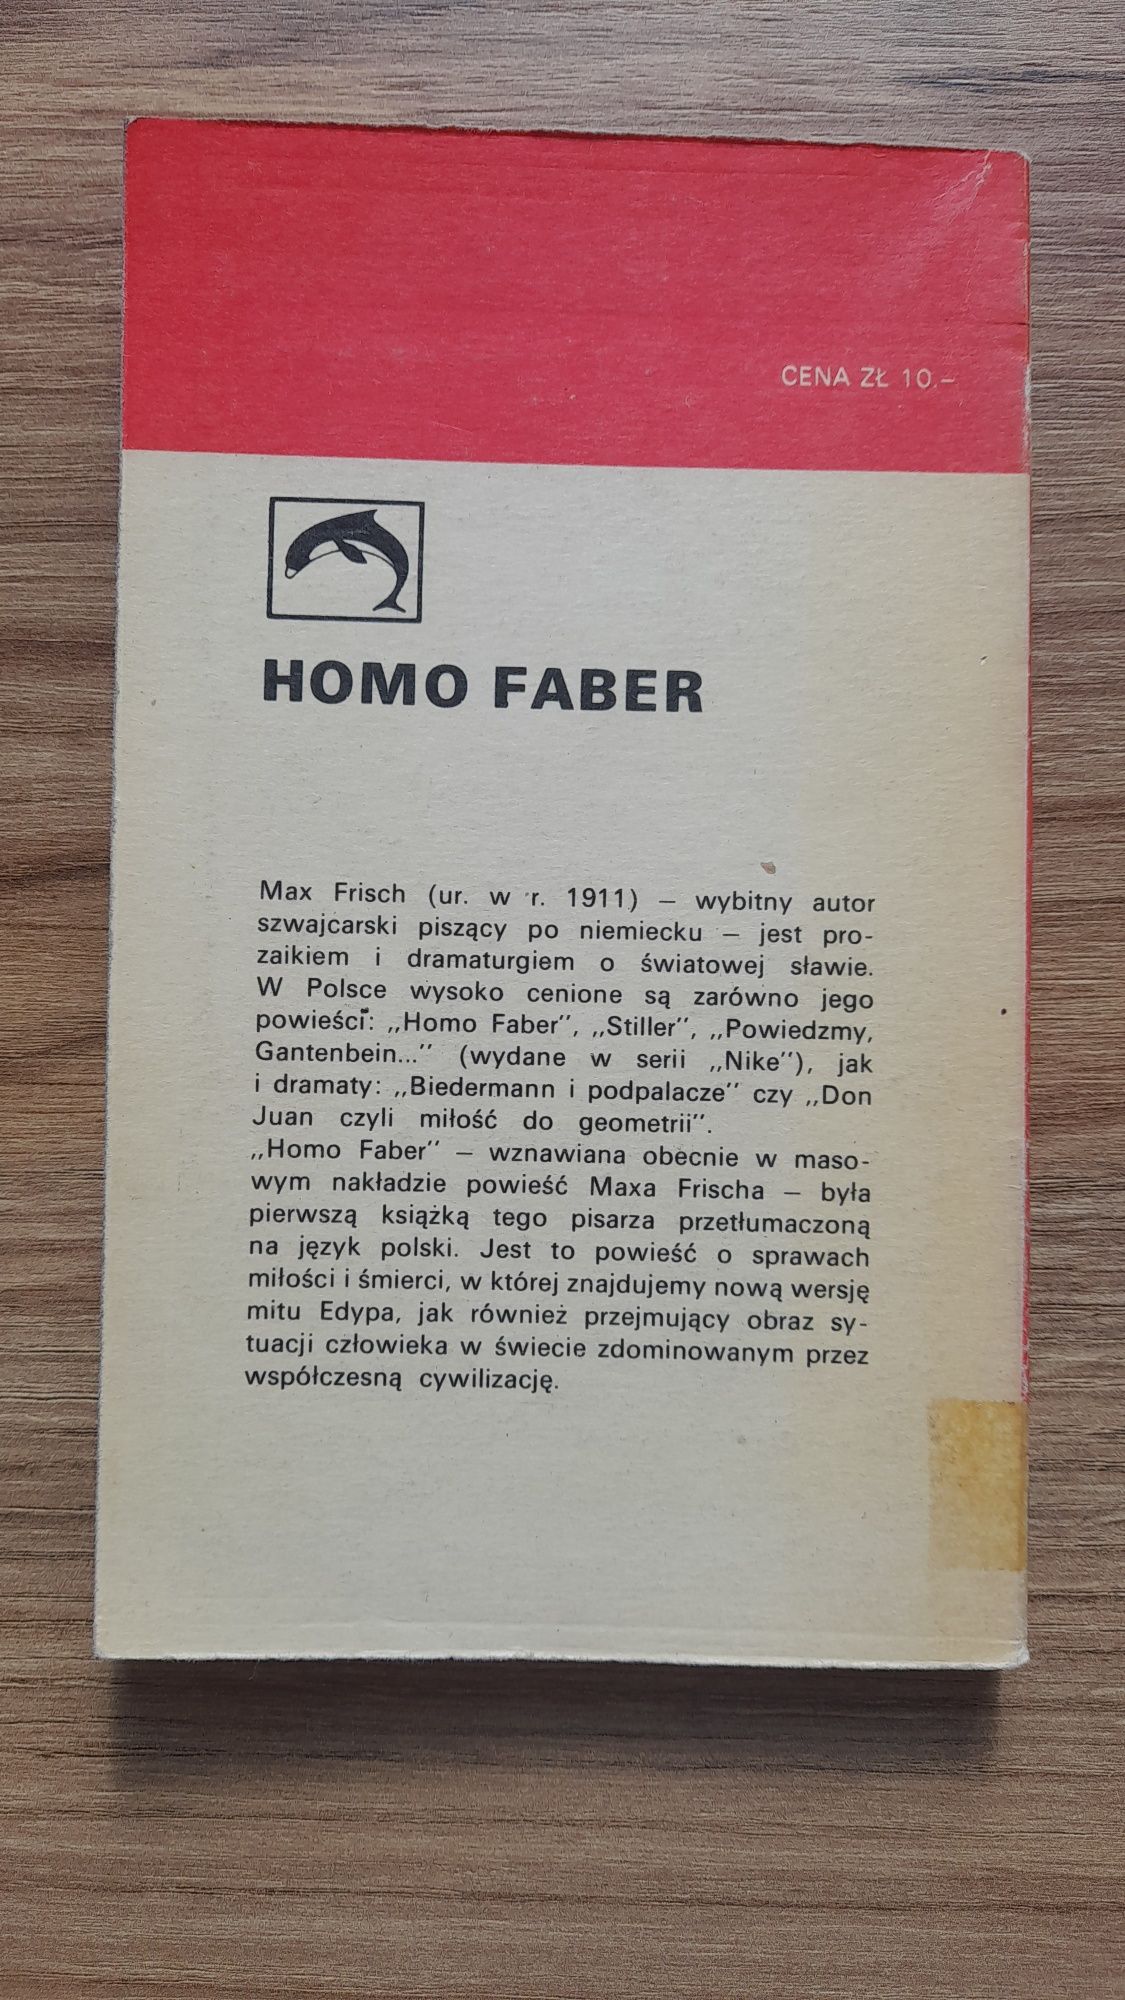 Homo Faber - Max Frisch